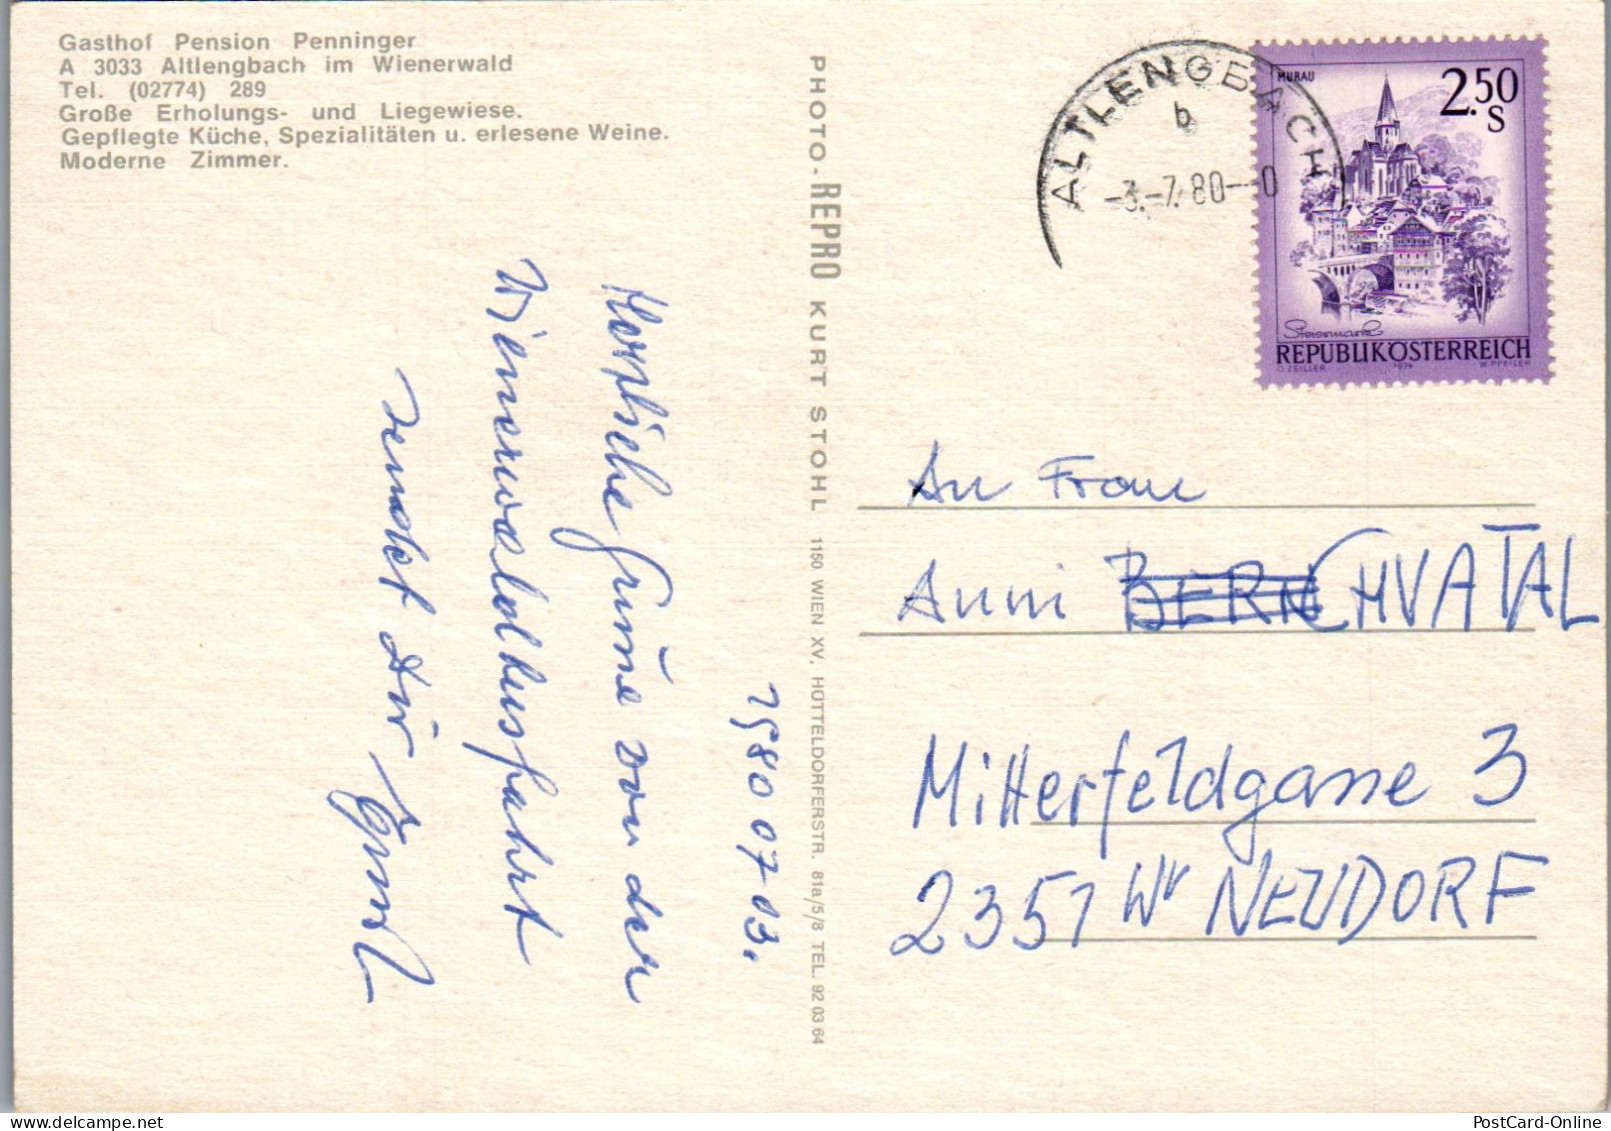 51952 - Niederösterreich - Altlengbach , Gasthof Pension Penninger , Wienerwald - Gelaufen 1980 - St. Pölten